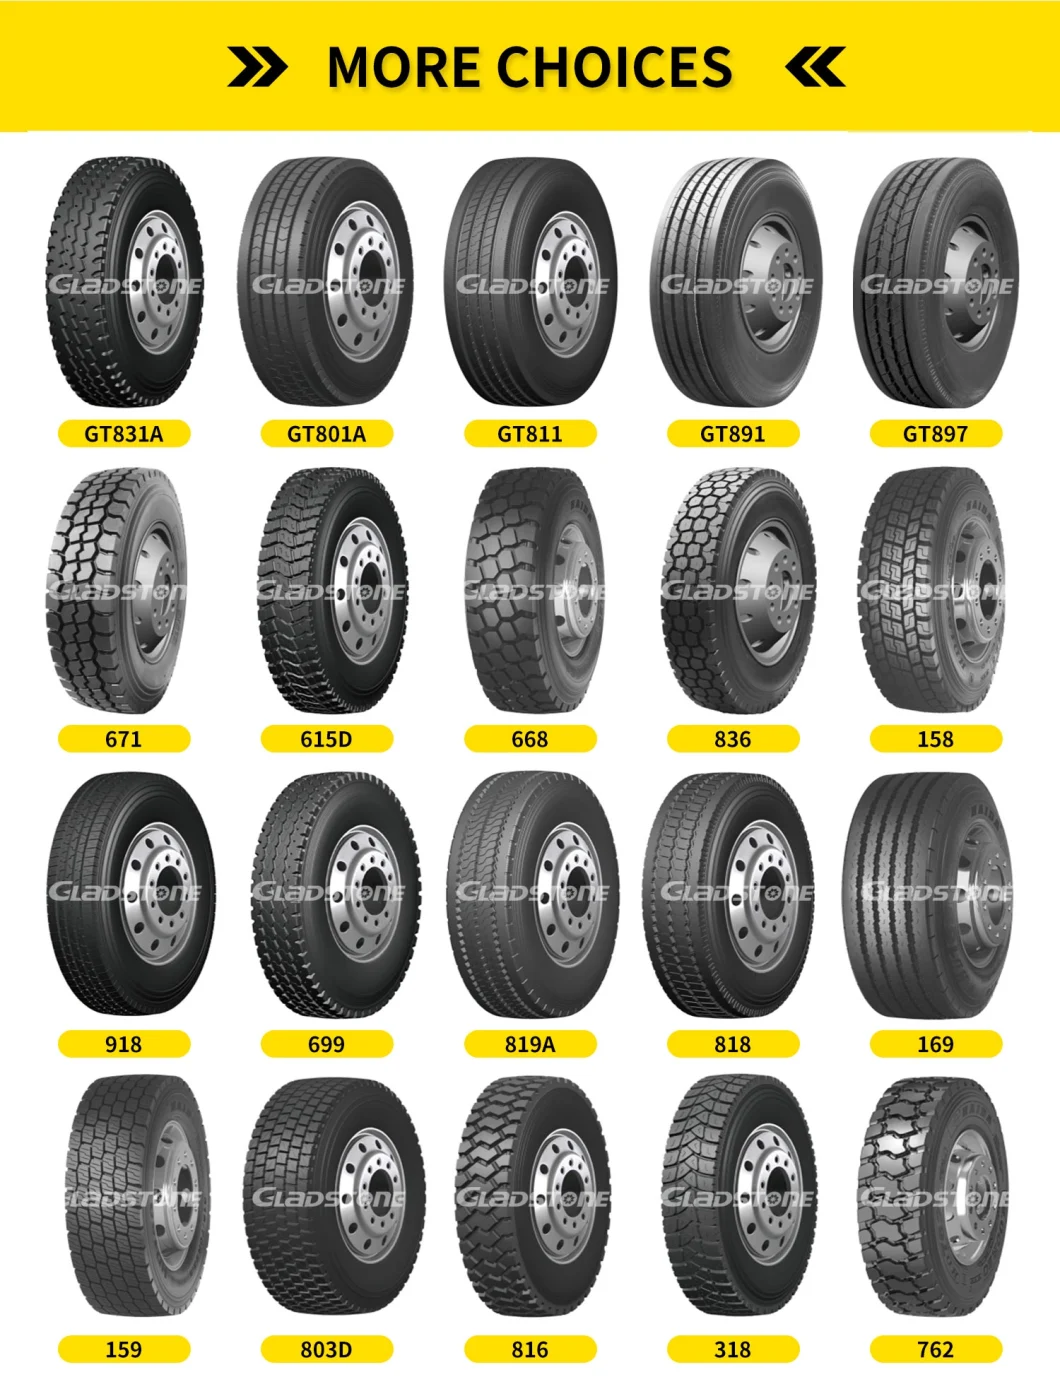 Heavy Duty Radial Mining Truck Tyre / TBR Tyre for Mining / Mining Truck Tyre/Truck Tire 8.25r20, 9.00r20, 10.00r20, 11.00r20, 12.00r20